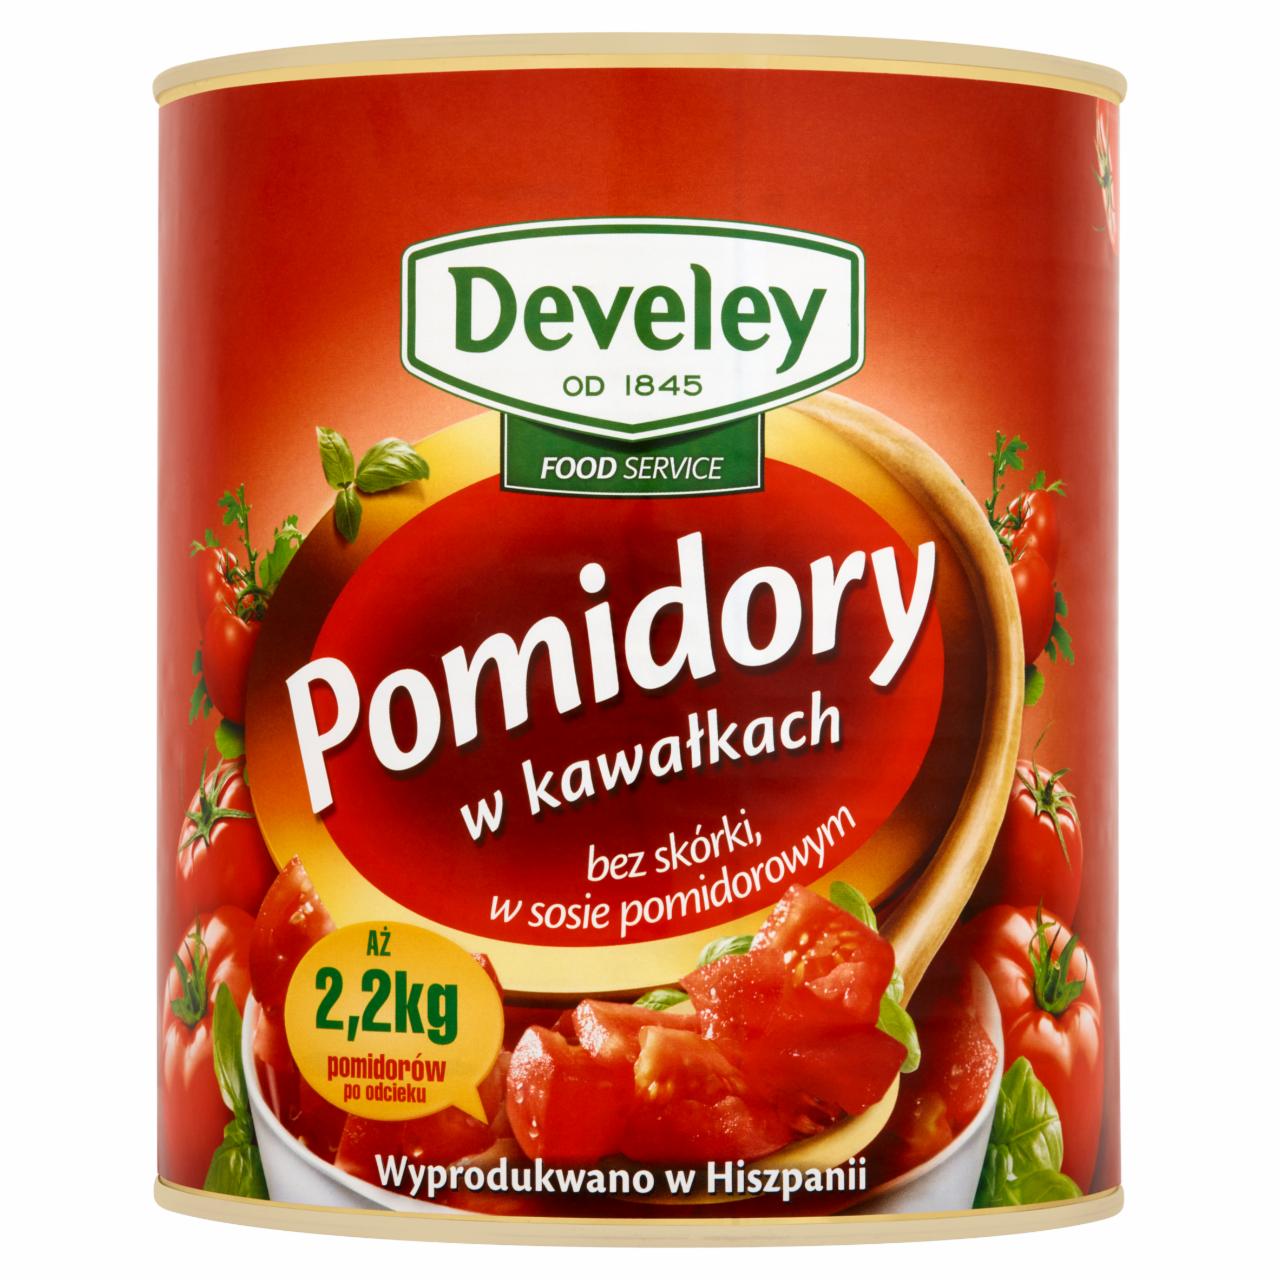 Zdjęcia - Develey Food Service Pomidory w kawałkach bez skórki w sosie pomidorowym 2900 g